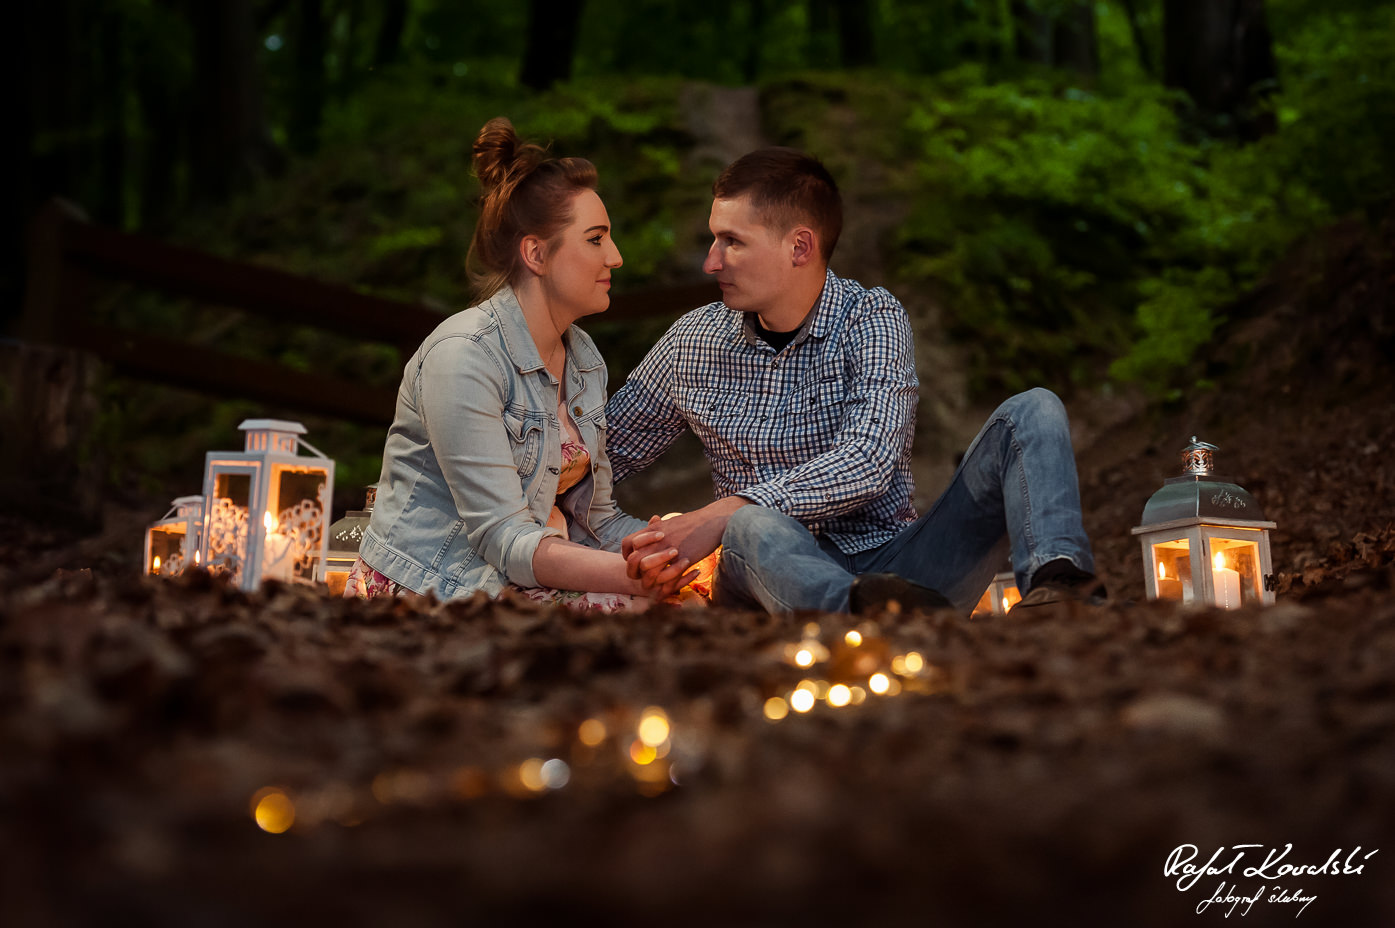 delikatny blask światła lampionów stworzył romantyczny nastrój na narzeczeńskiej sesji zdjęciowej w lesie